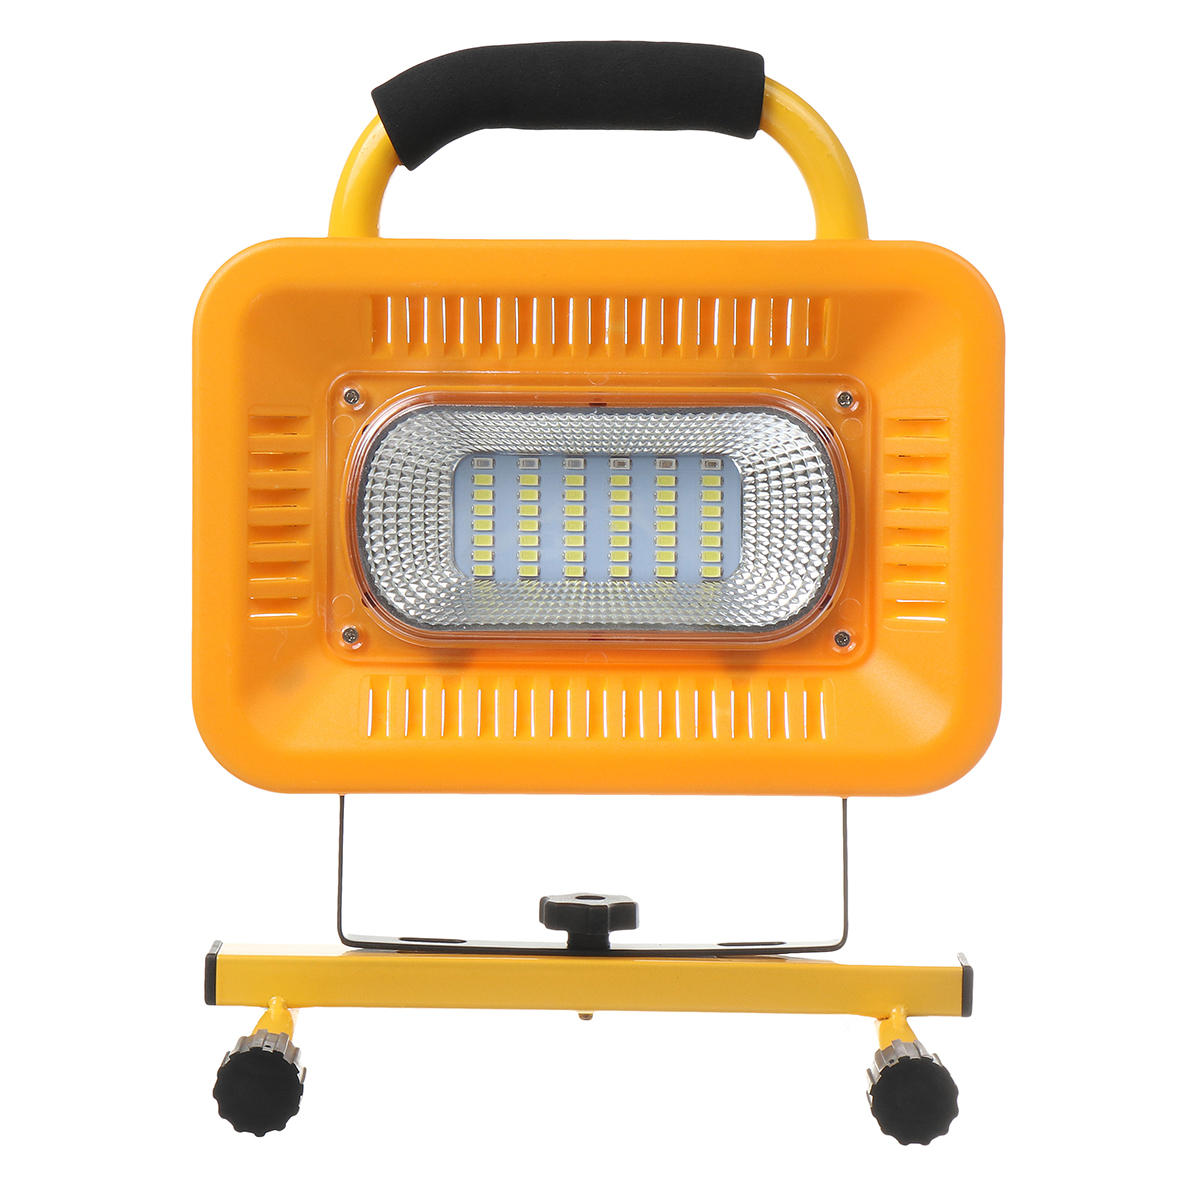 Lampe de camping LED étanche de 48 lumières avec 3 modes de travail, banque d'alimentation pour les voyages en plein air.